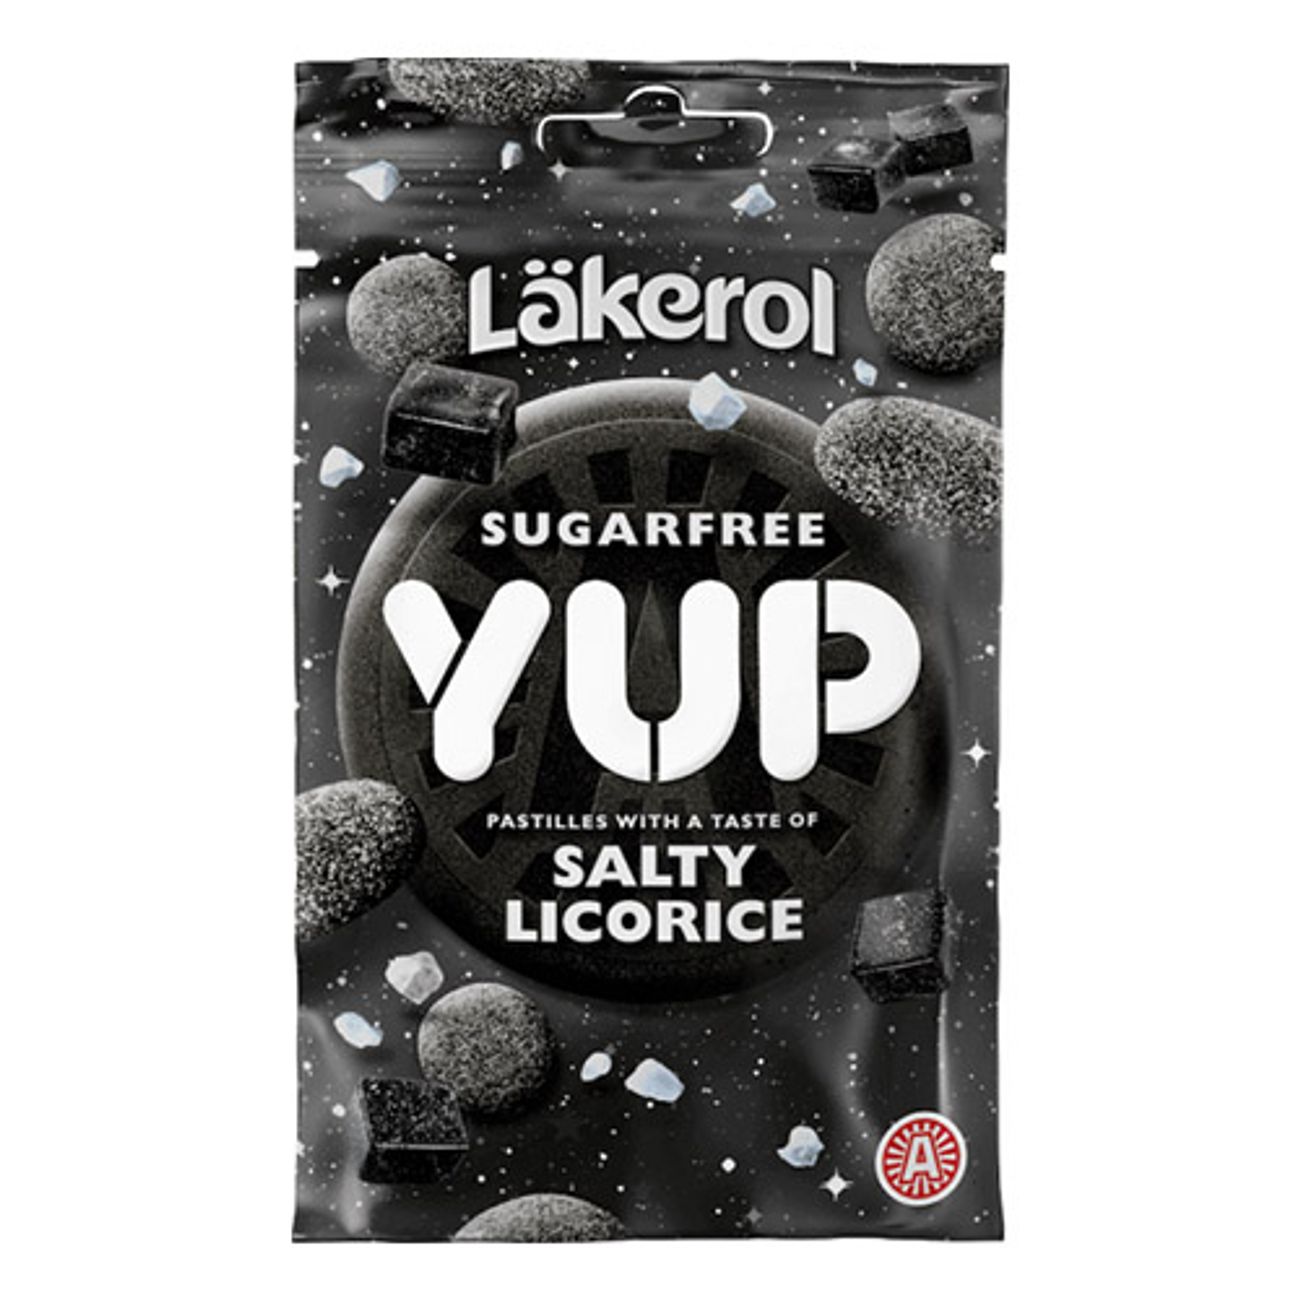 lakerol-yup-salty-licorice-1